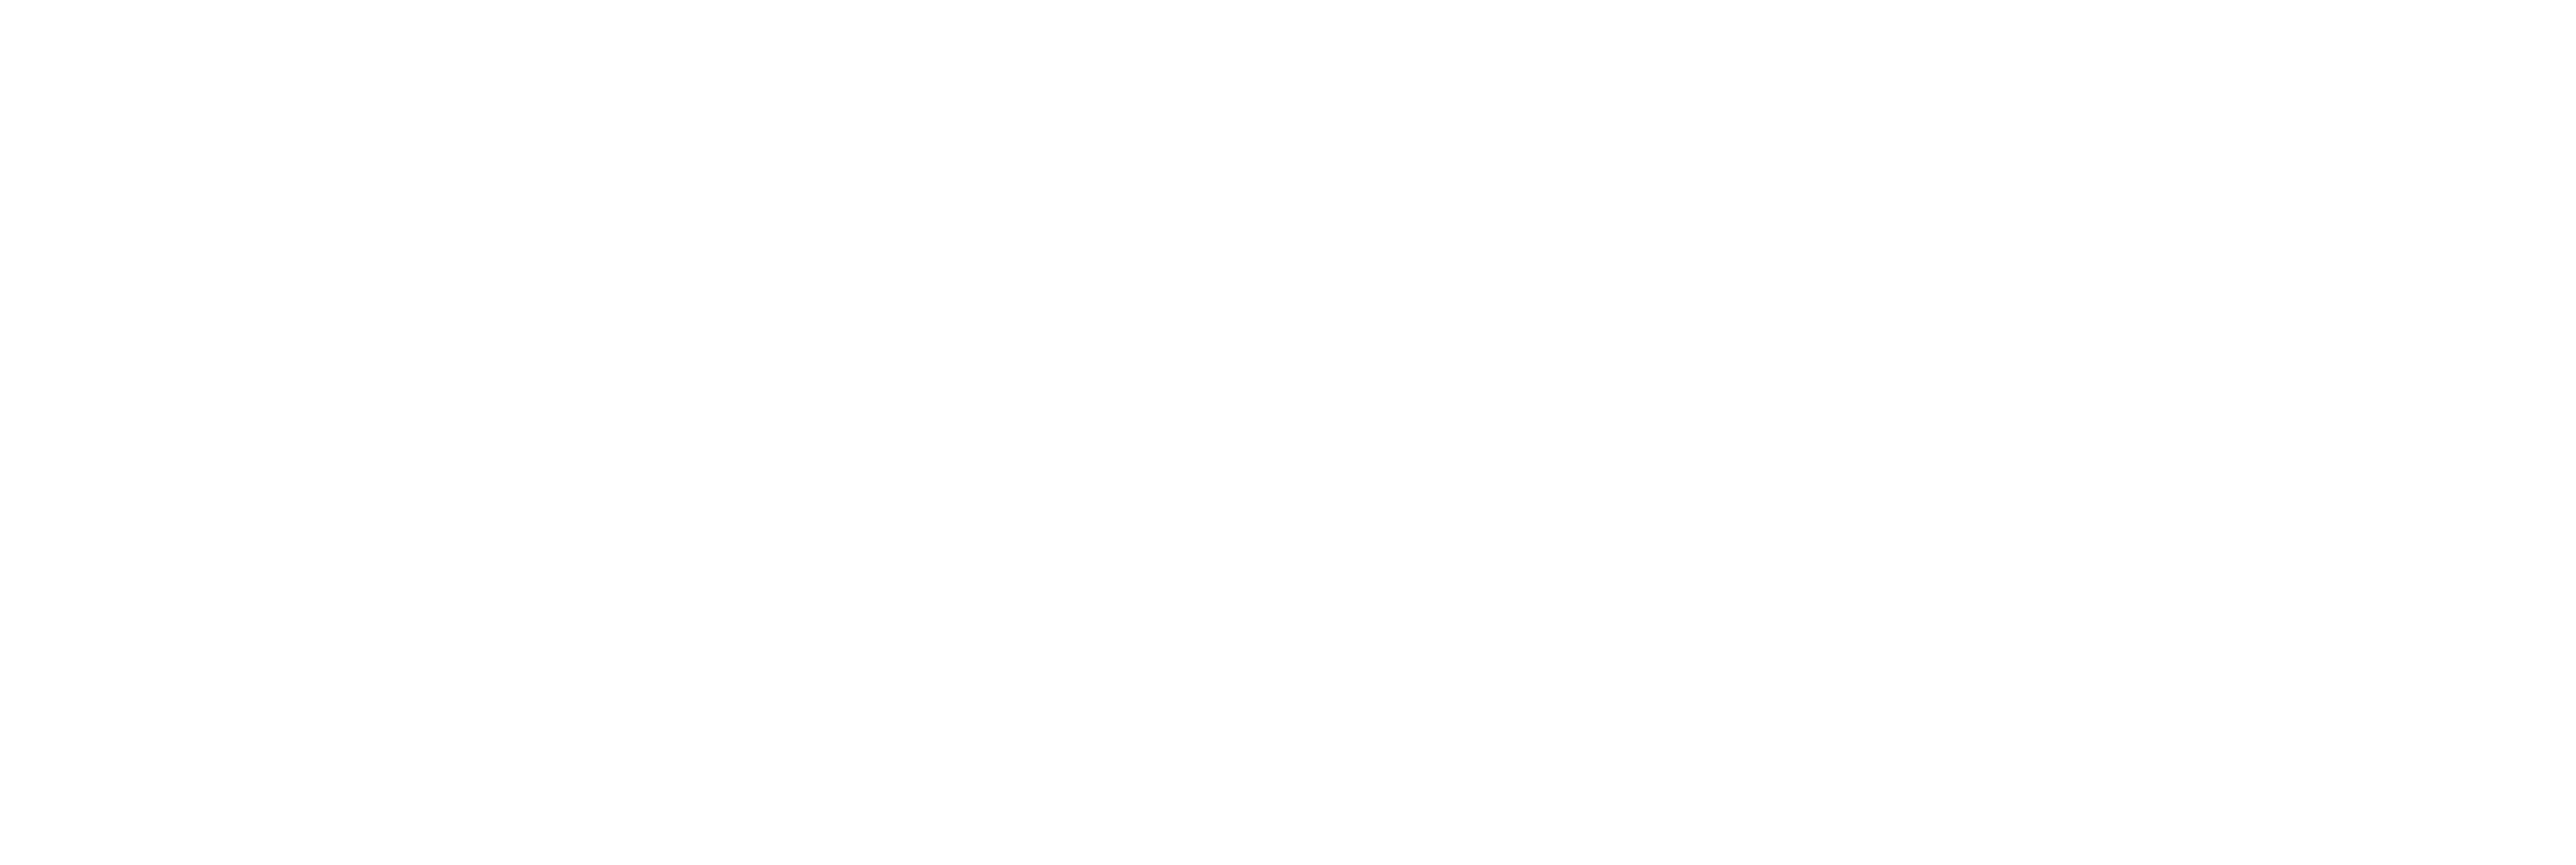 PWR